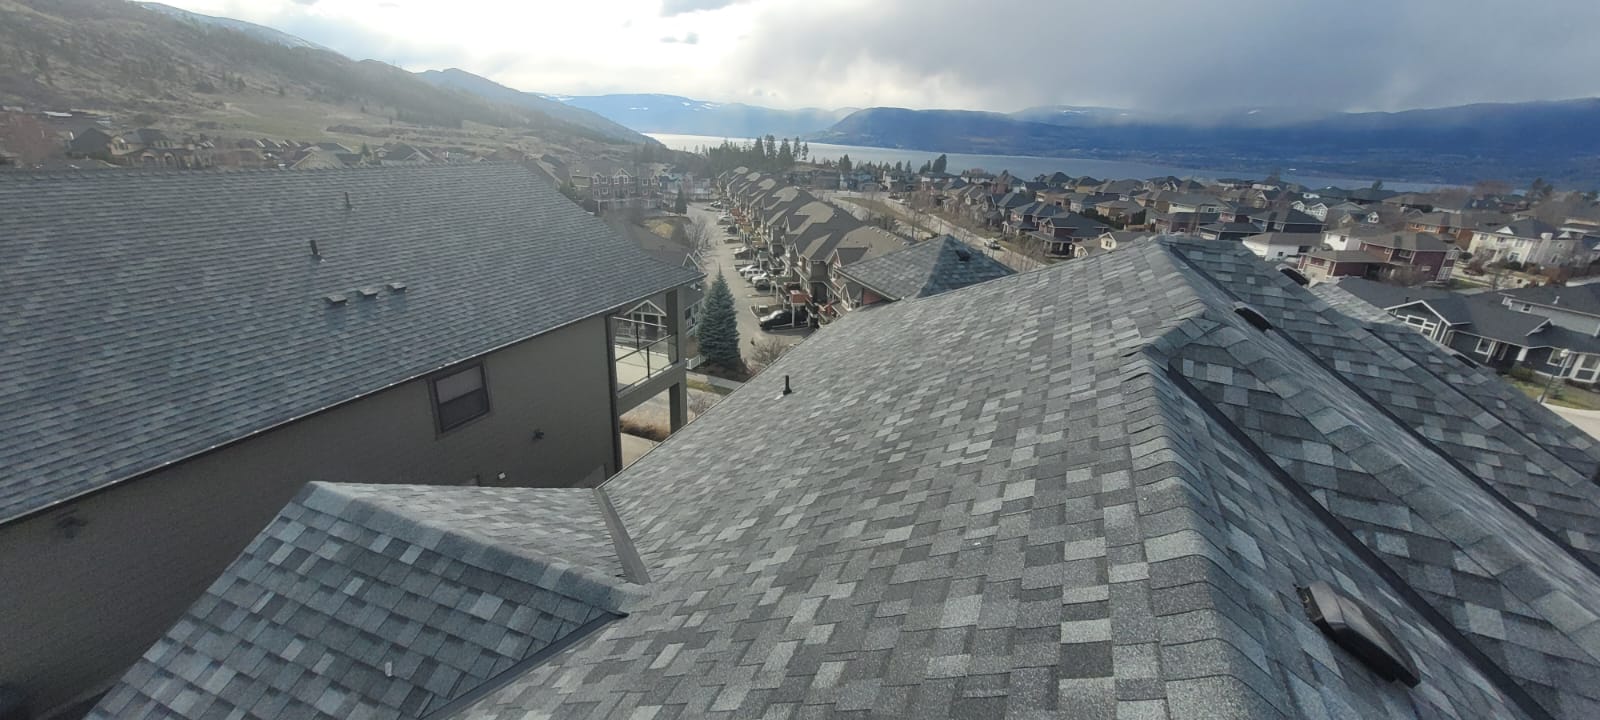 residential sloped roof Okanagan